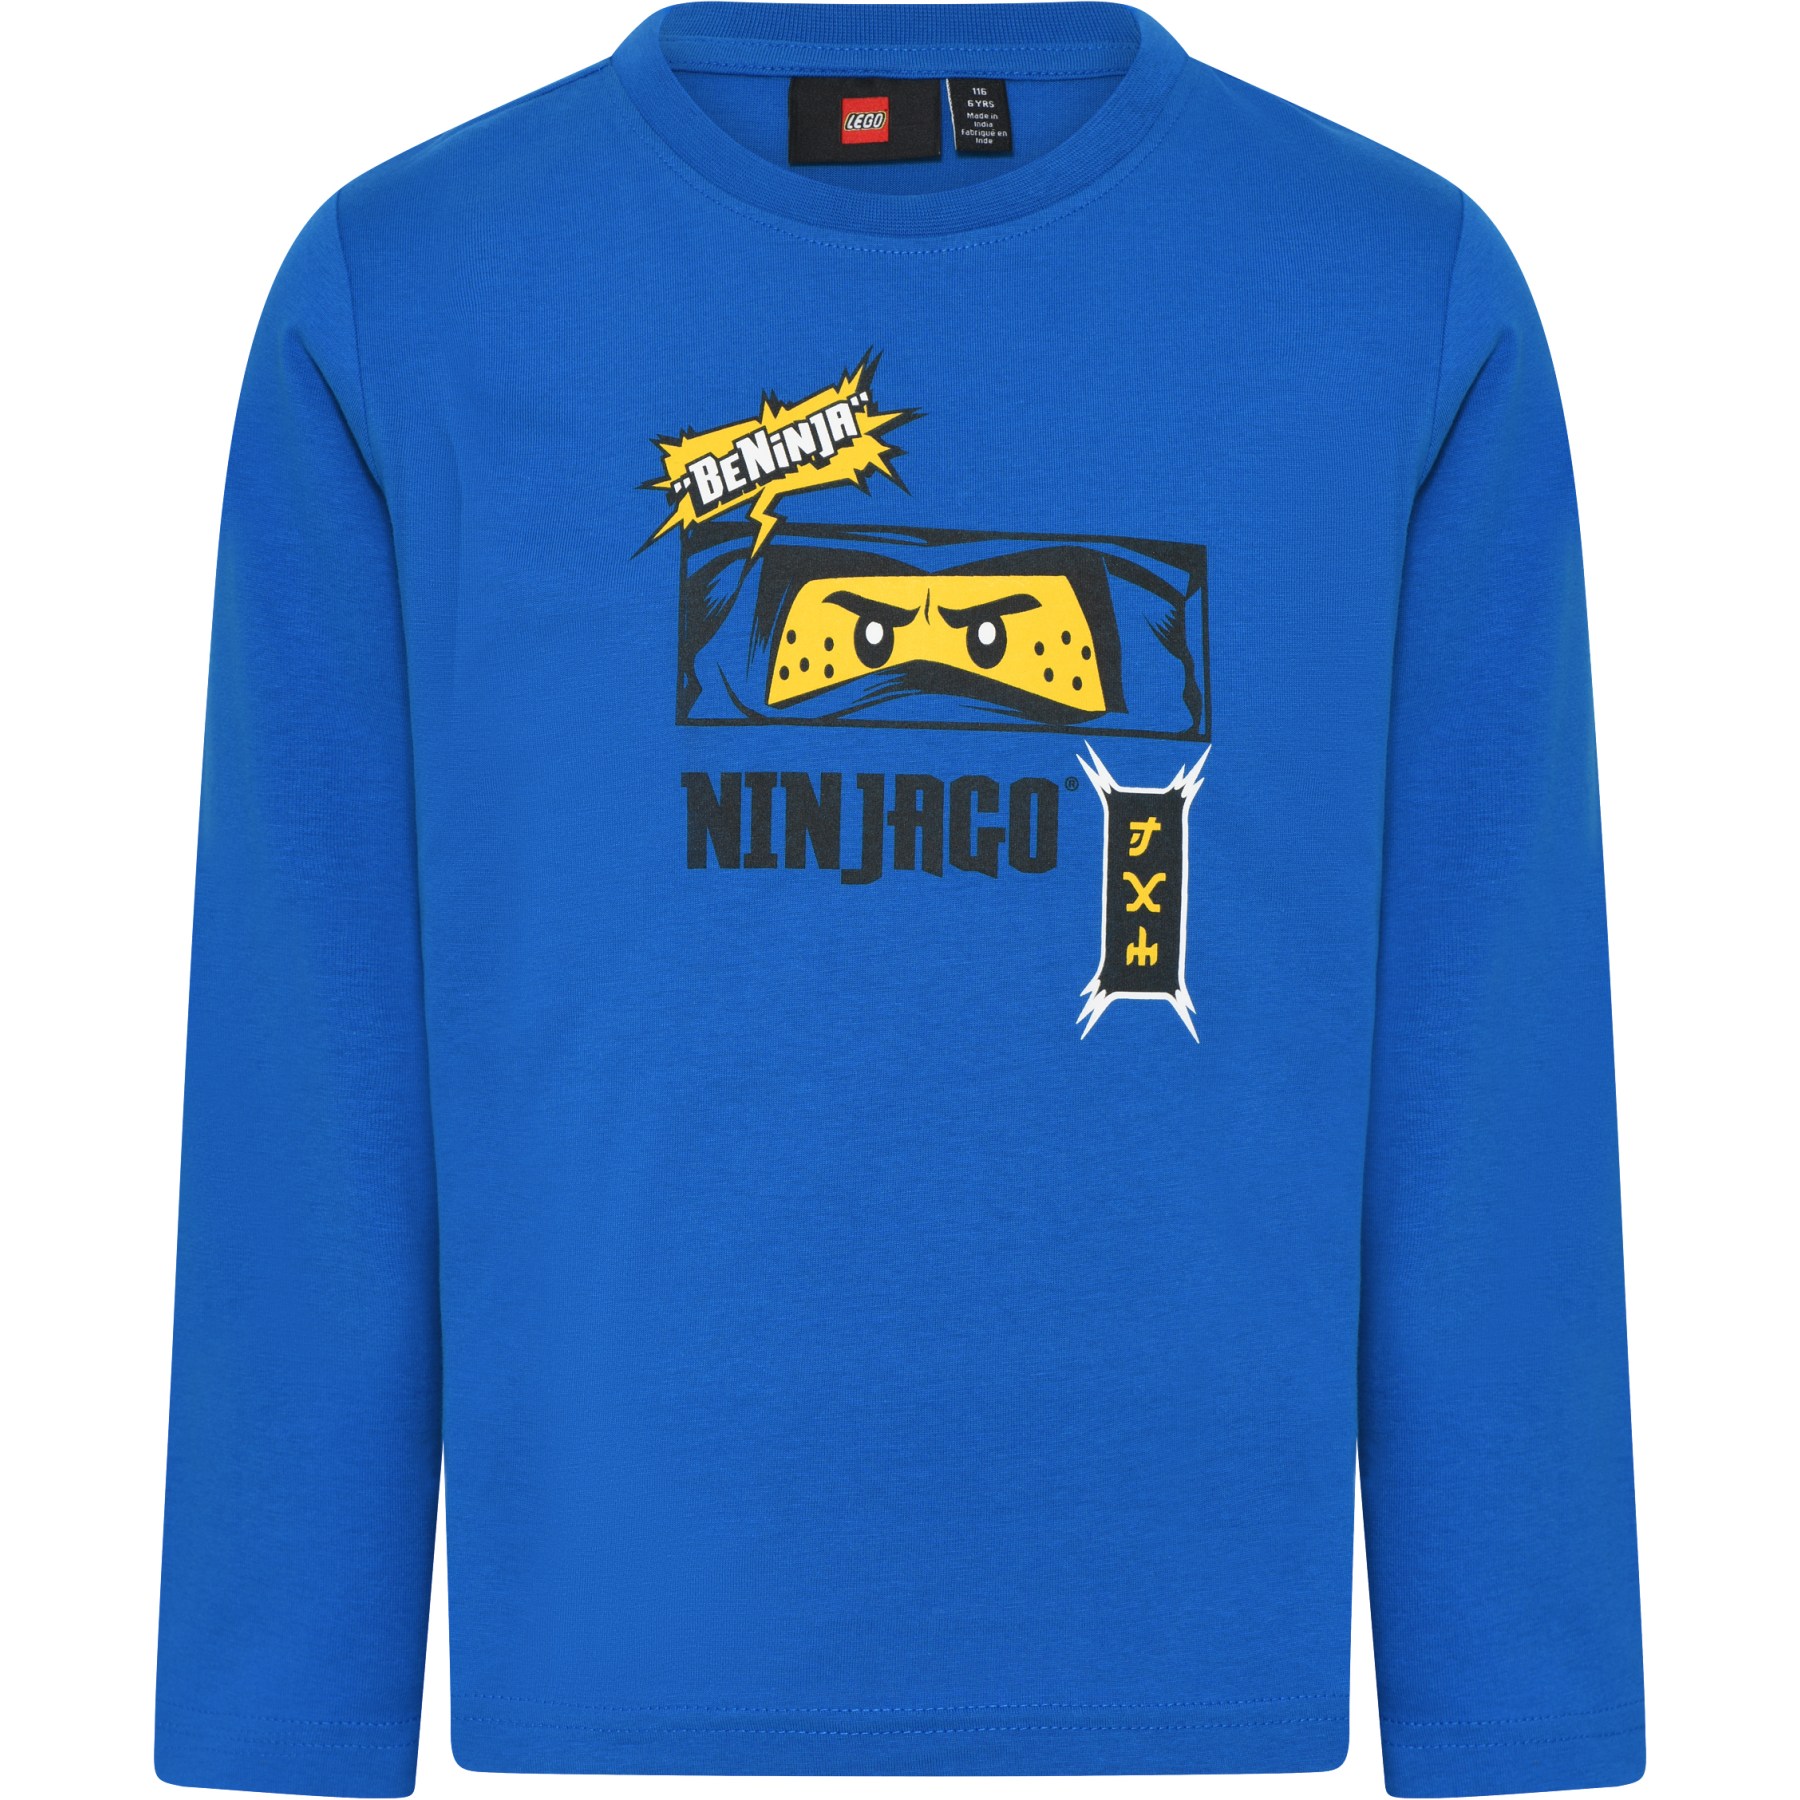 Productfoto van LEGO® Taylor 608 - NINJAGO Jongens Shirt met Lange Mouwen - Blauw